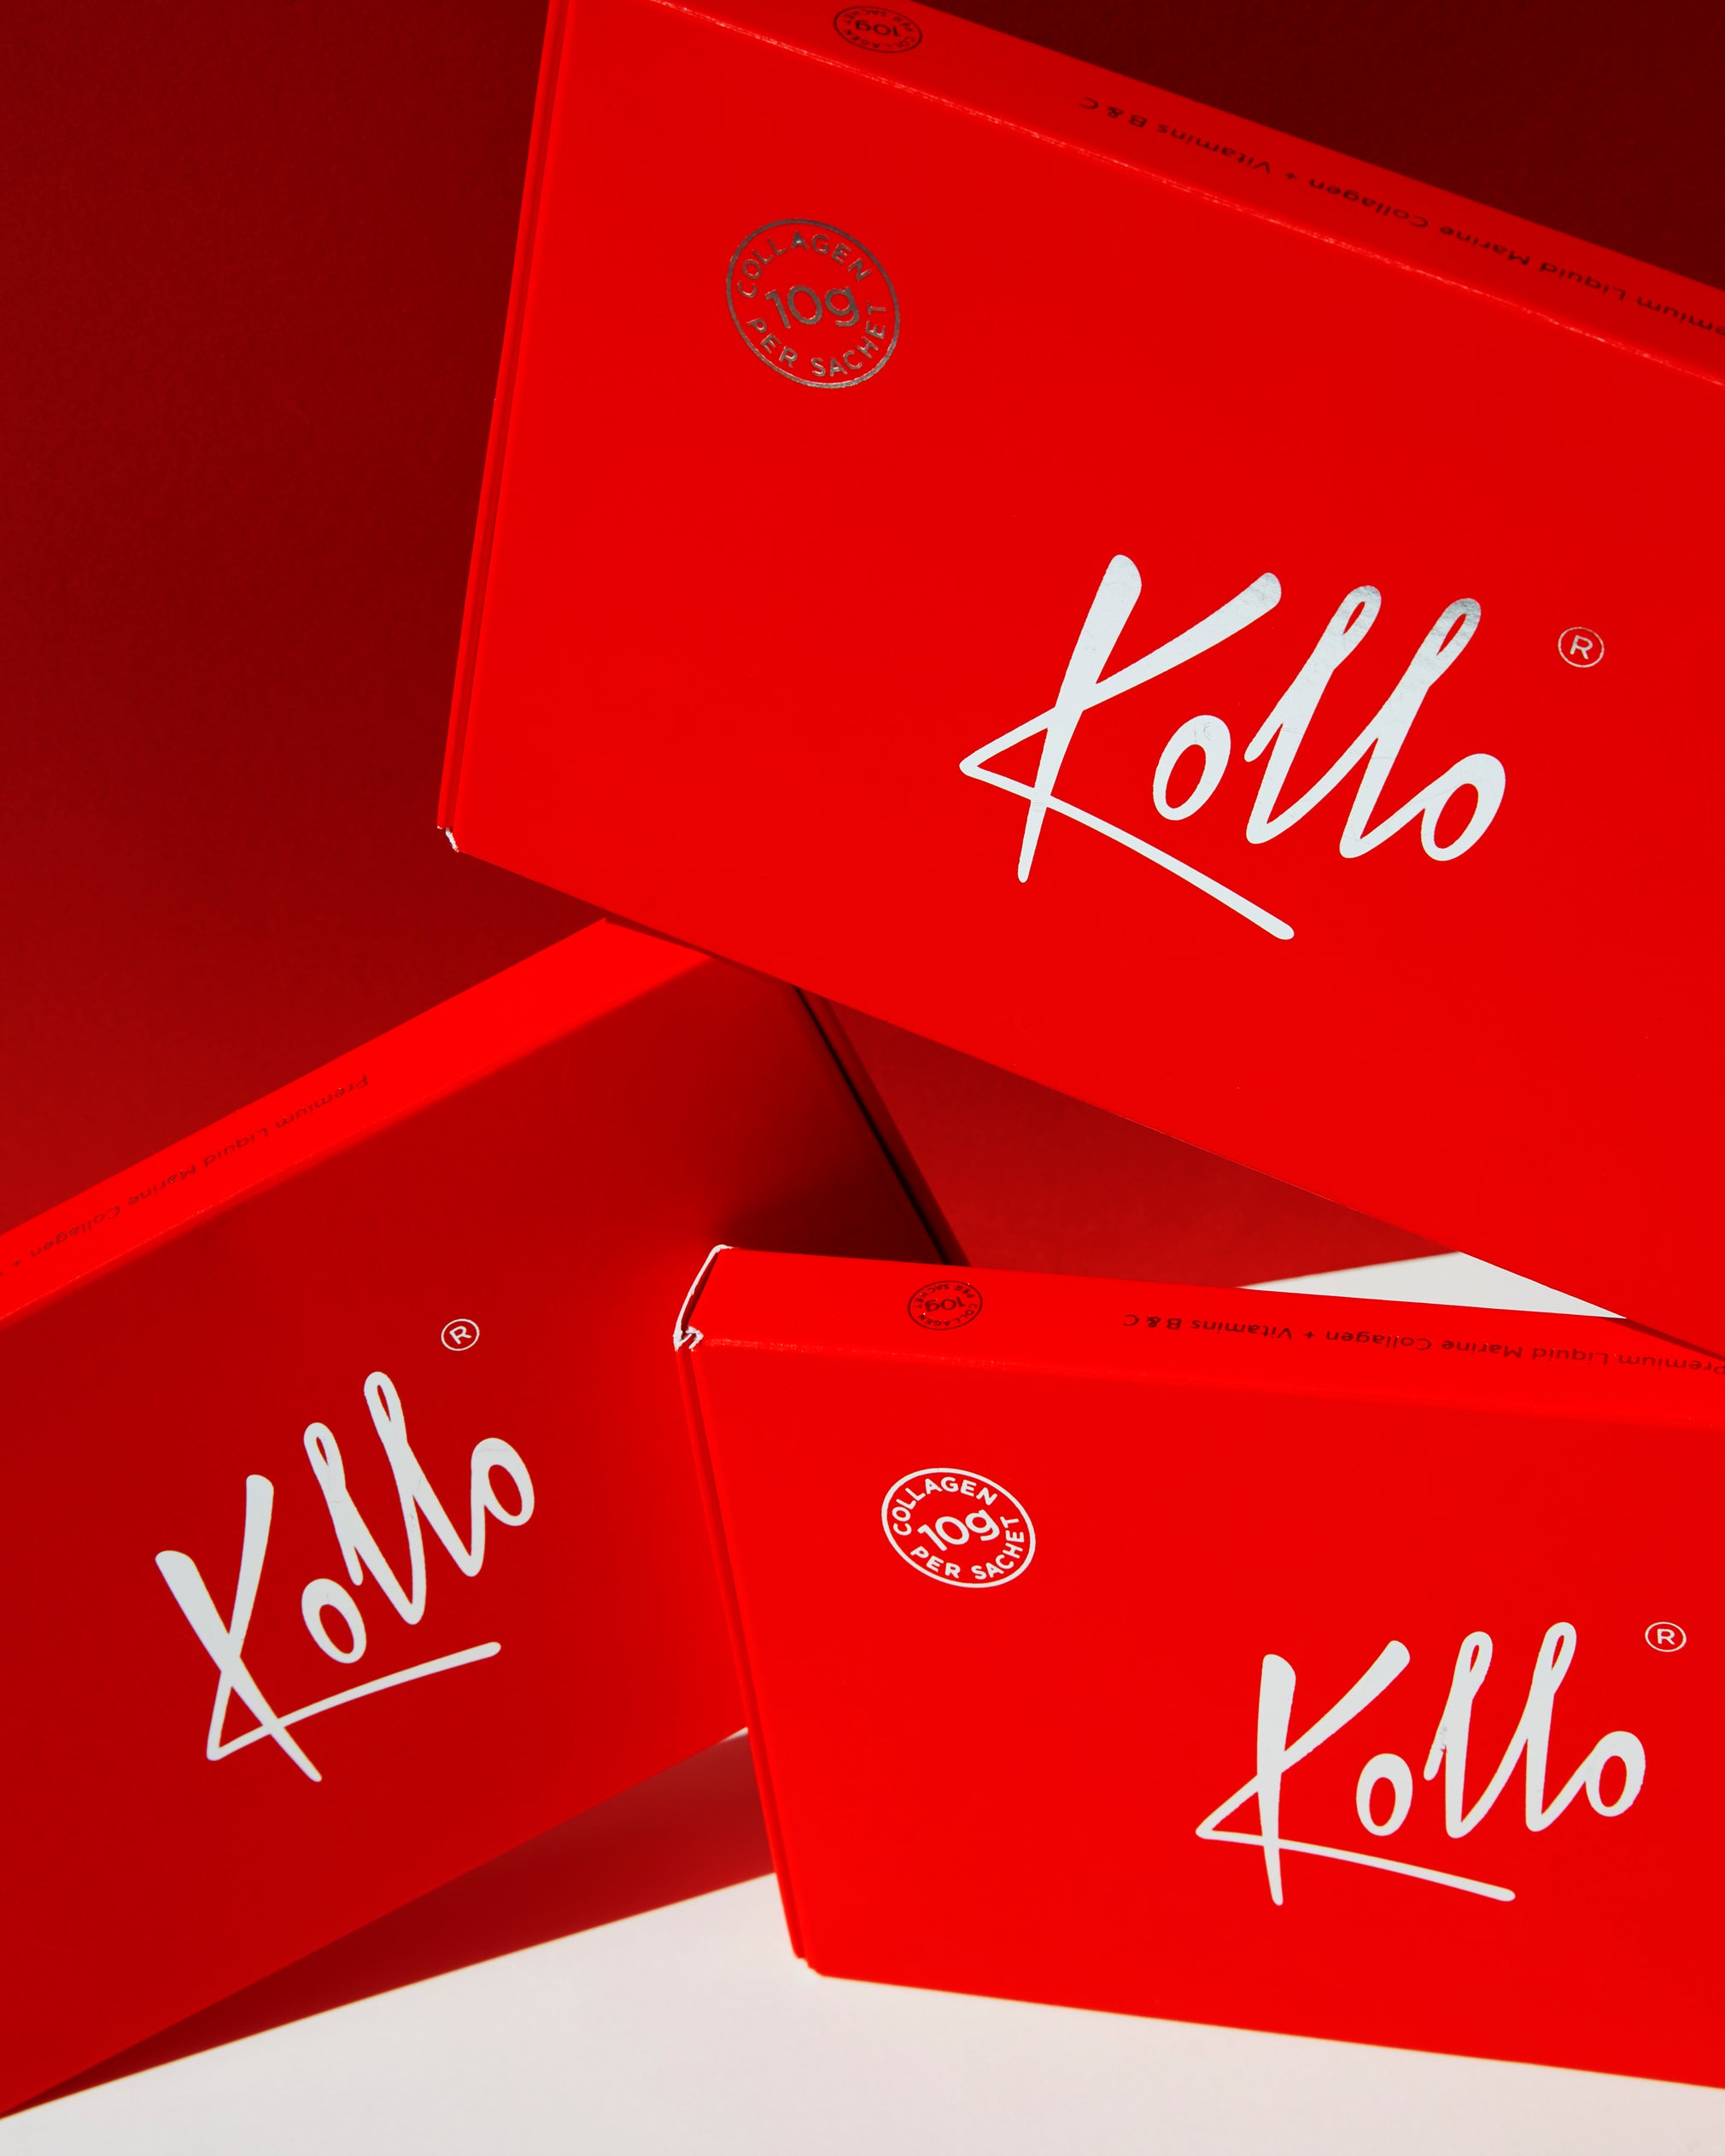 Kollo, The Multi-Award Winning Collagen Supplement